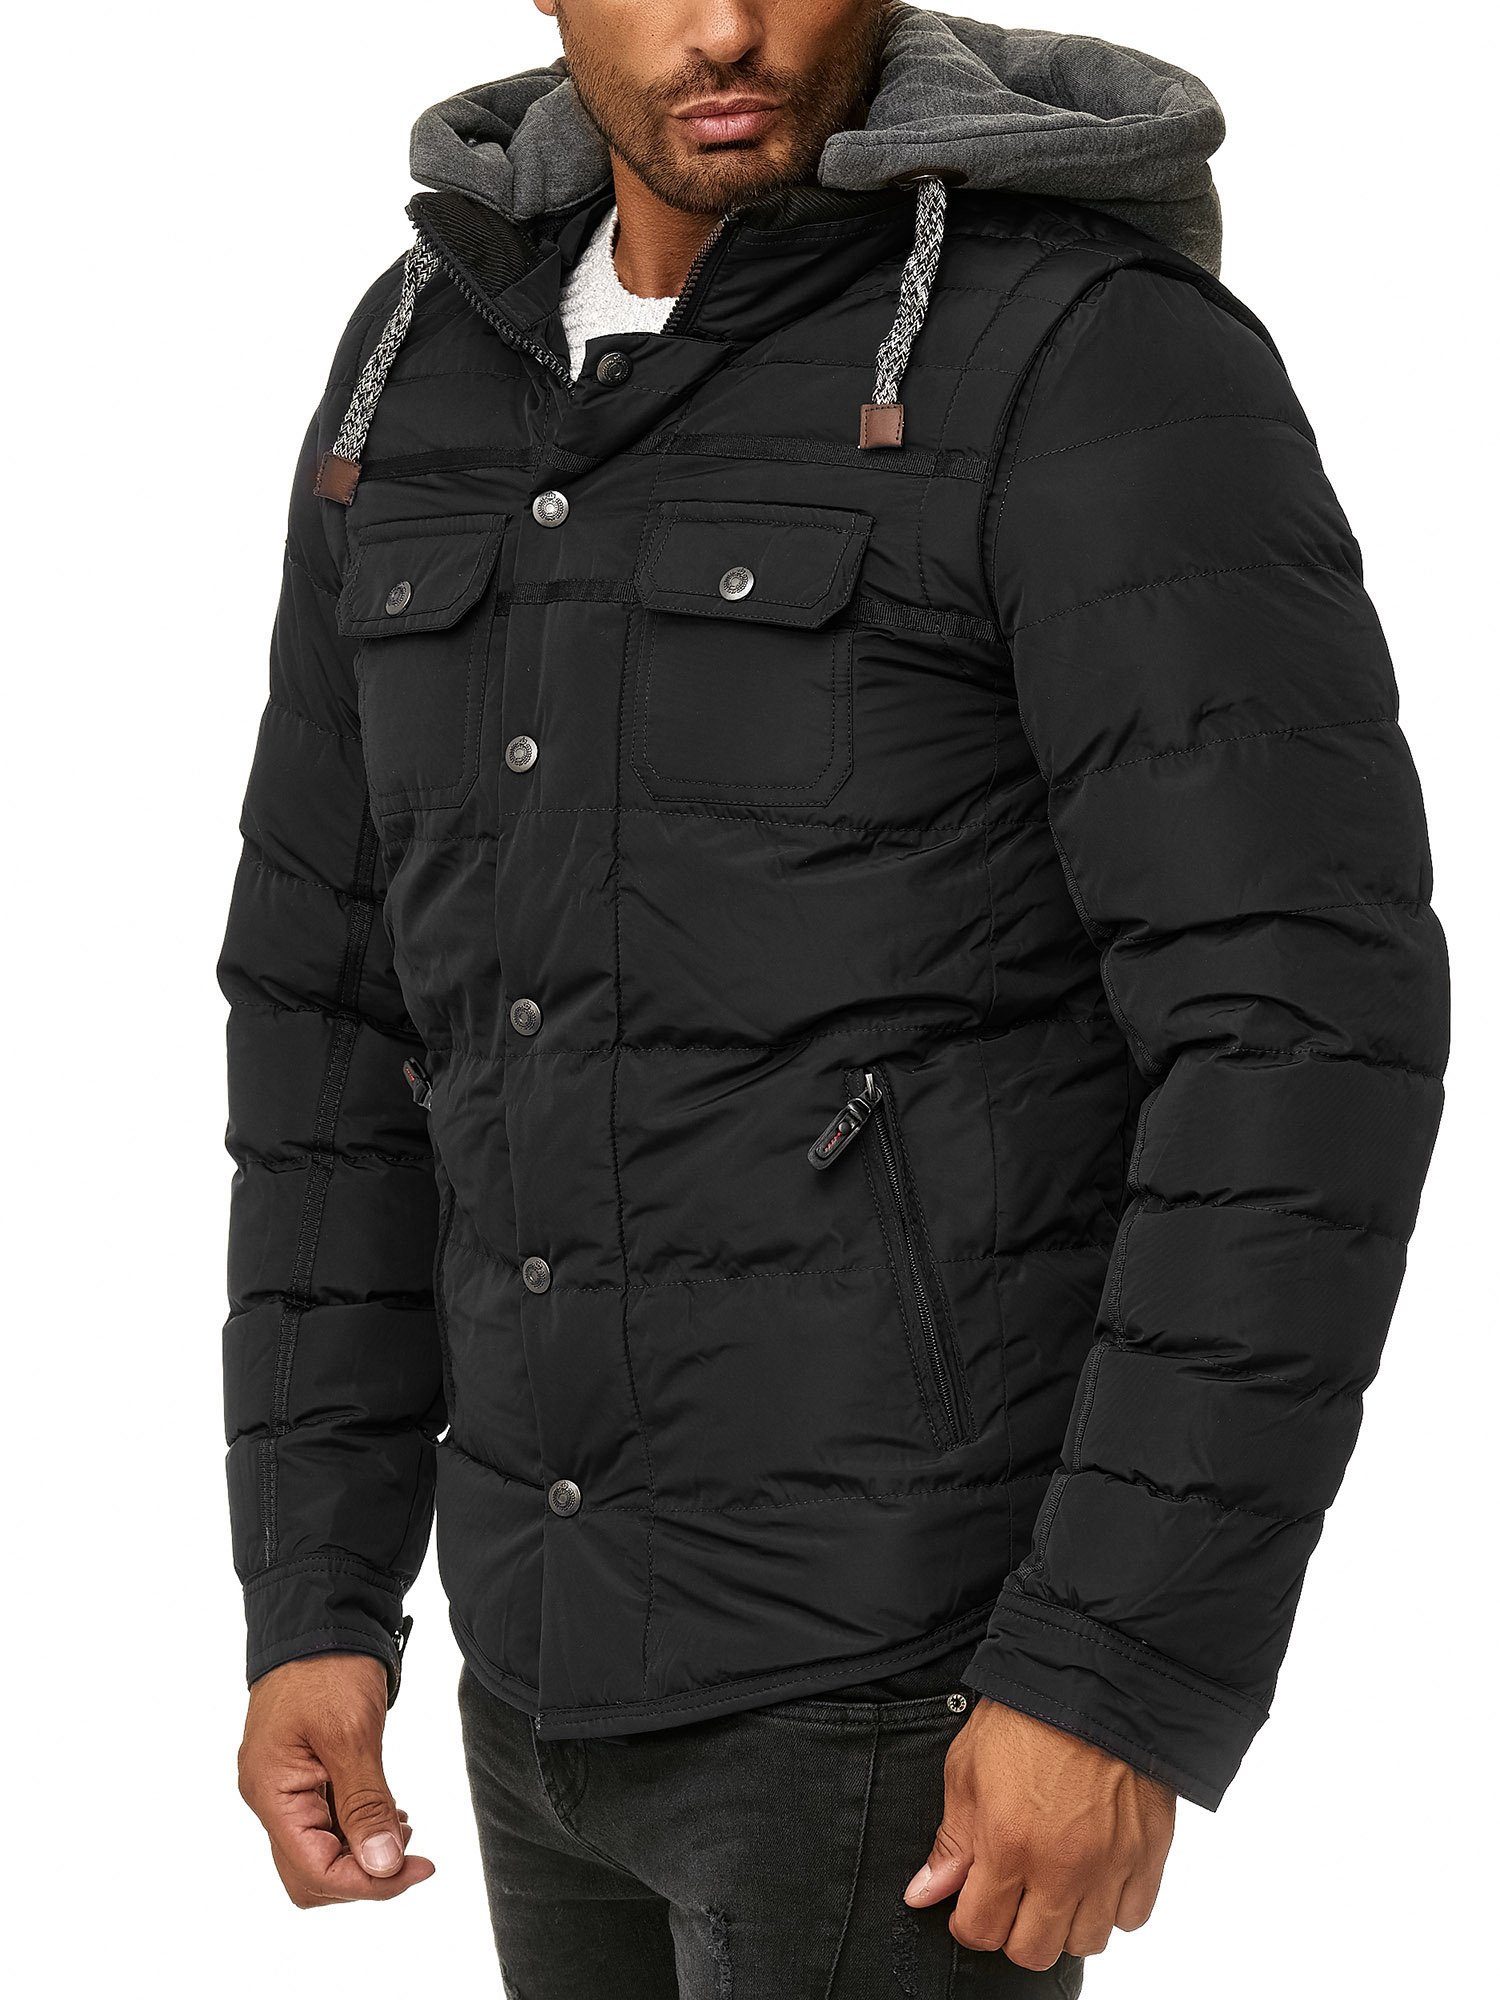 BLACKROCK Winterjacke »Herren Steppjacke Jacke mit abnehmbarer Sweatkapuze  (Ja.1706)« online kaufen | OTTO